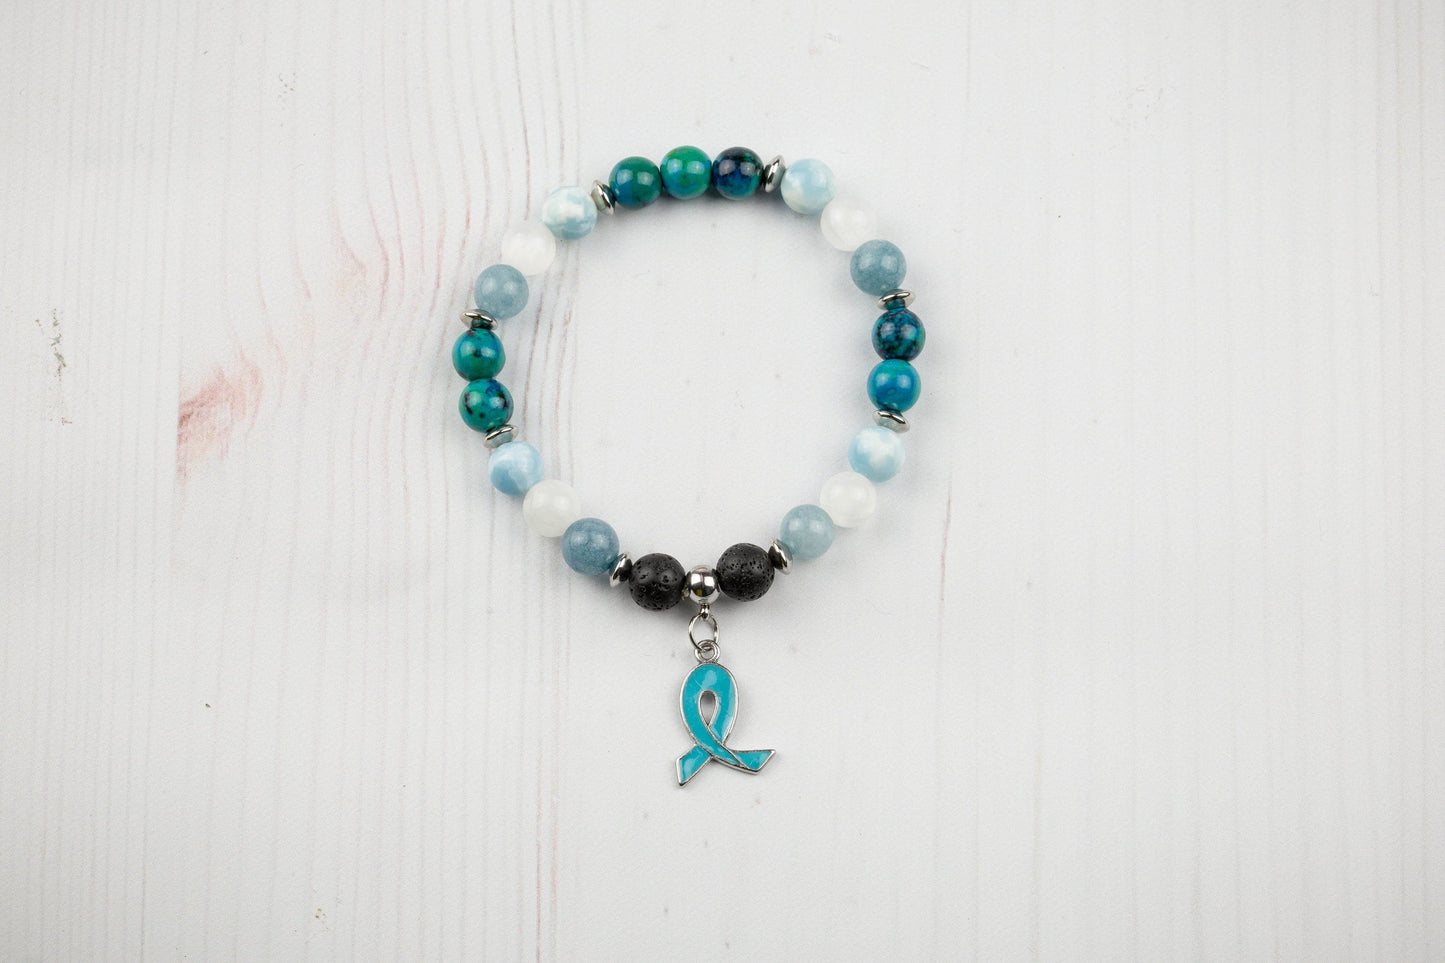 Ovarian Cancer Bracelet